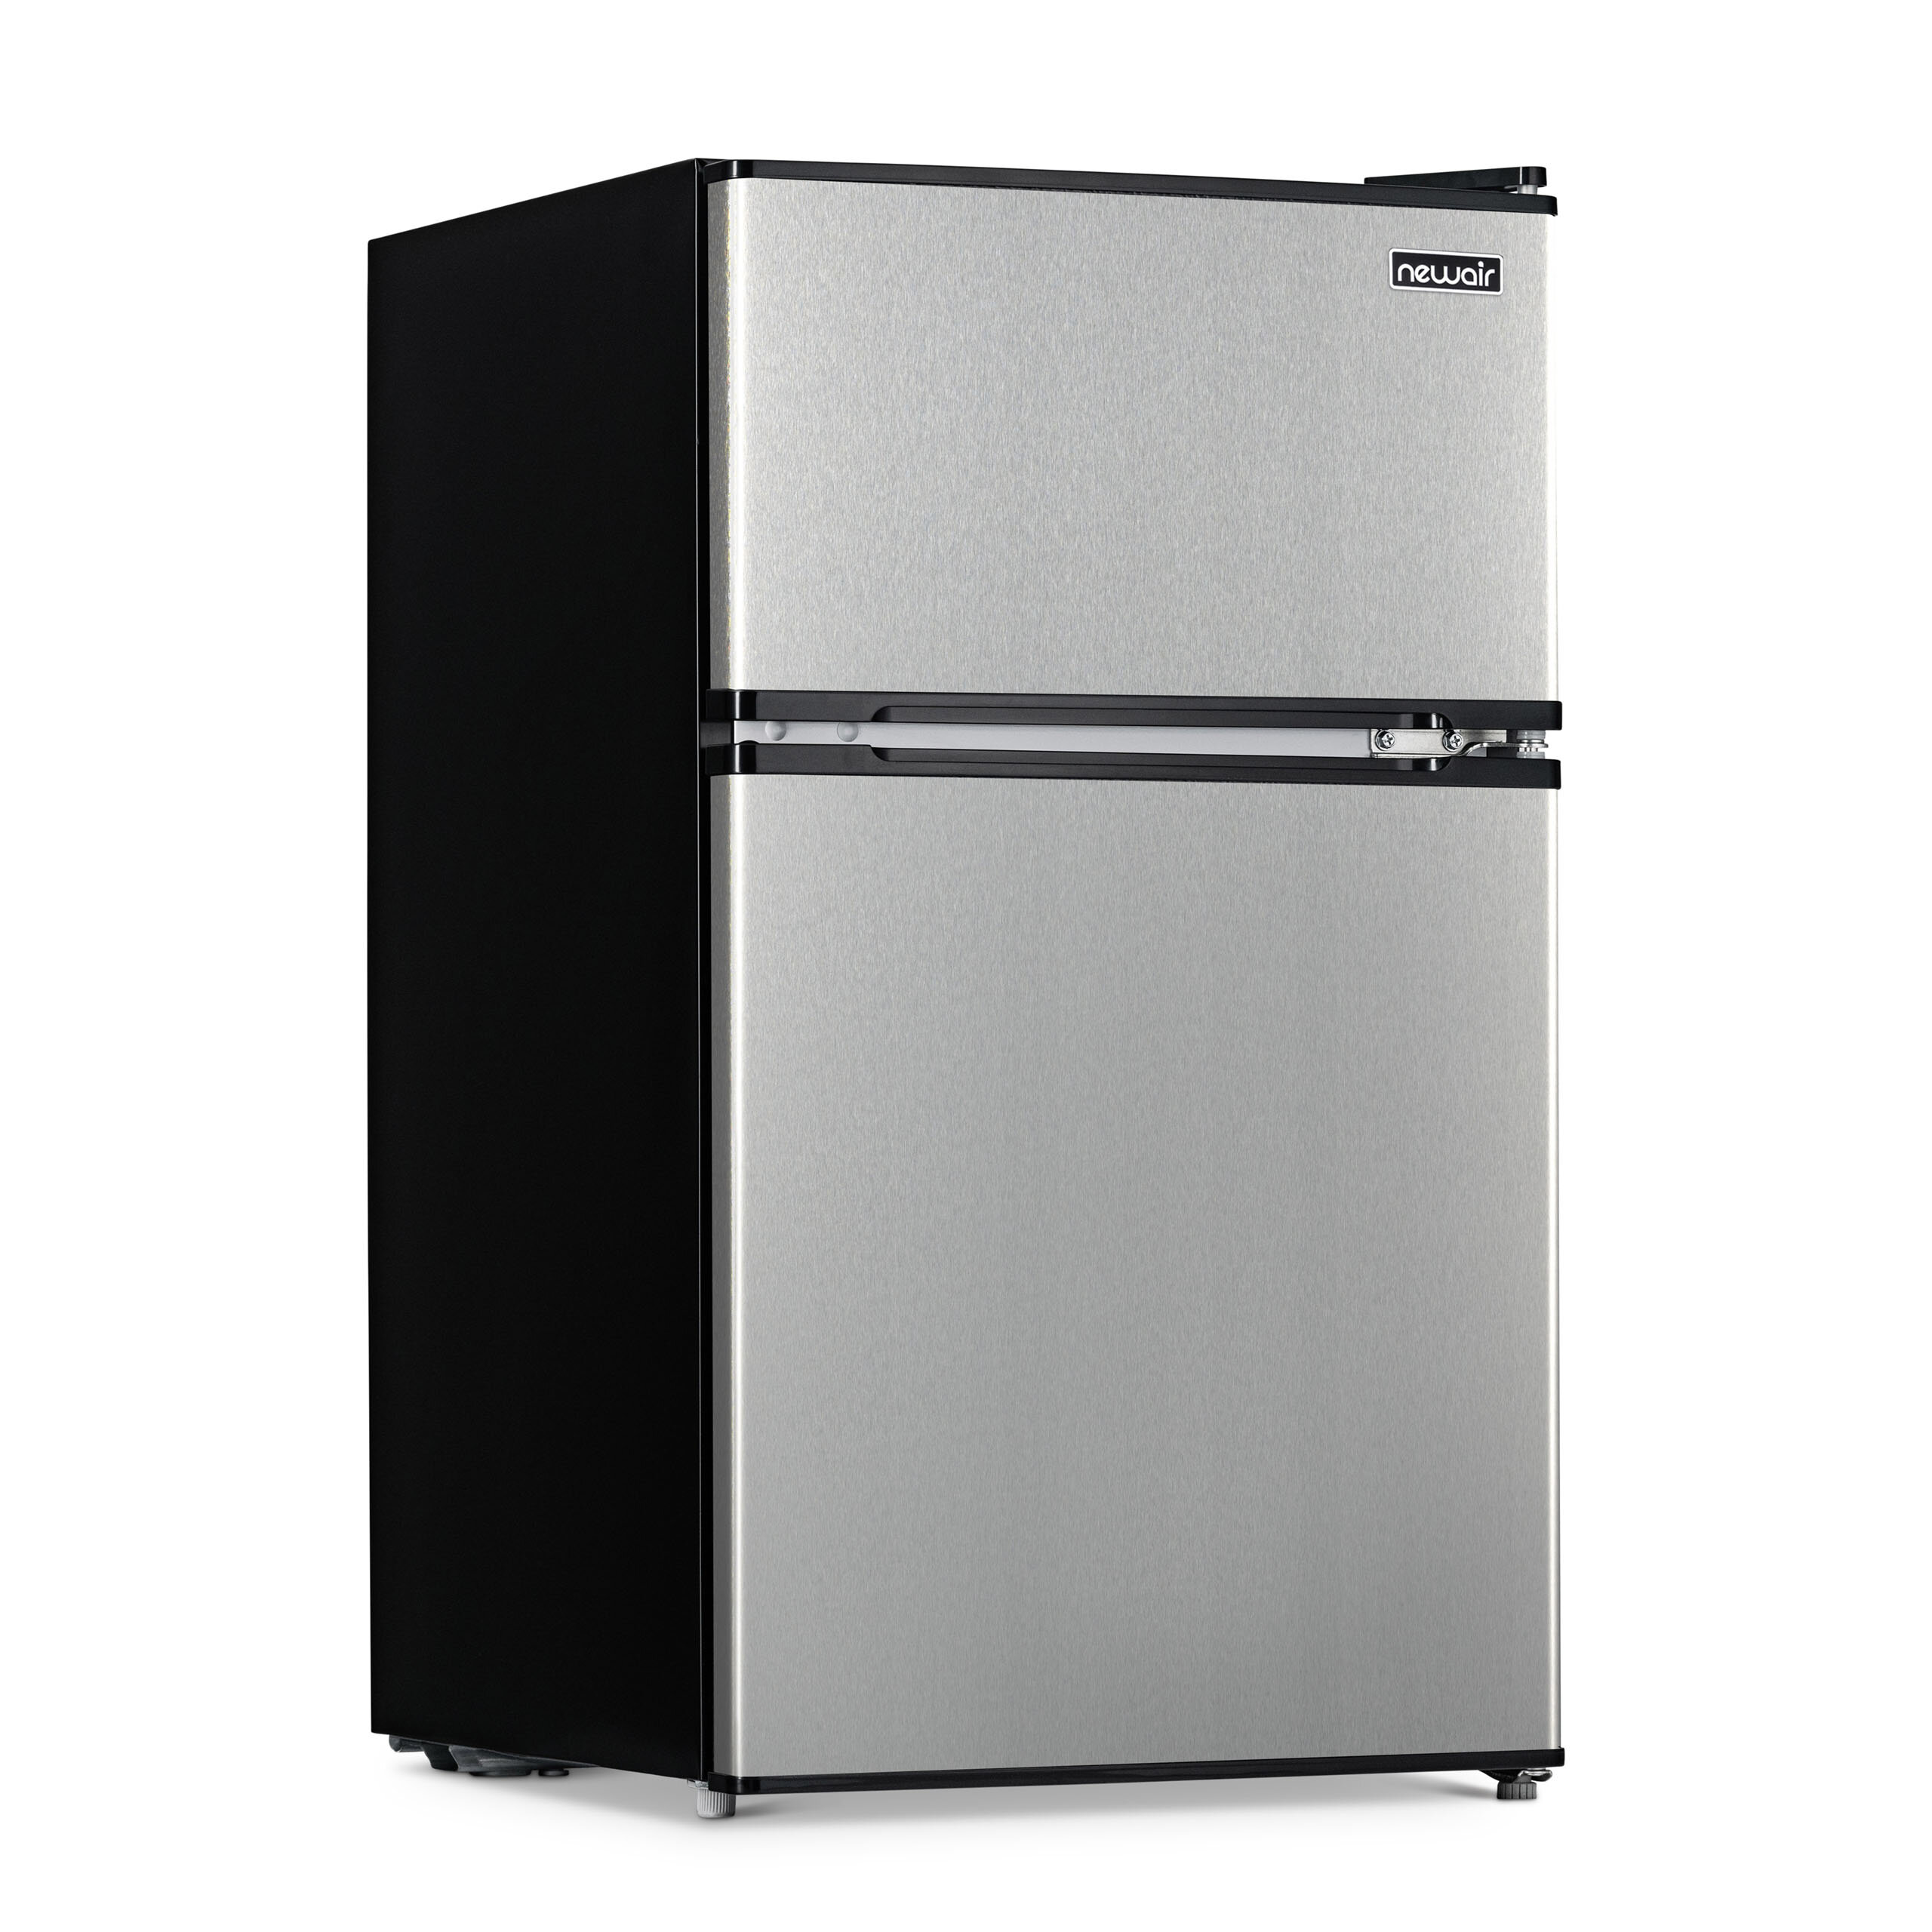 https://assets.wfcdn.com/im/35212240/compr-r85/1587/158738624/newair-31-cu-ft-compact-mini-refrigerator-with-freezer.jpg